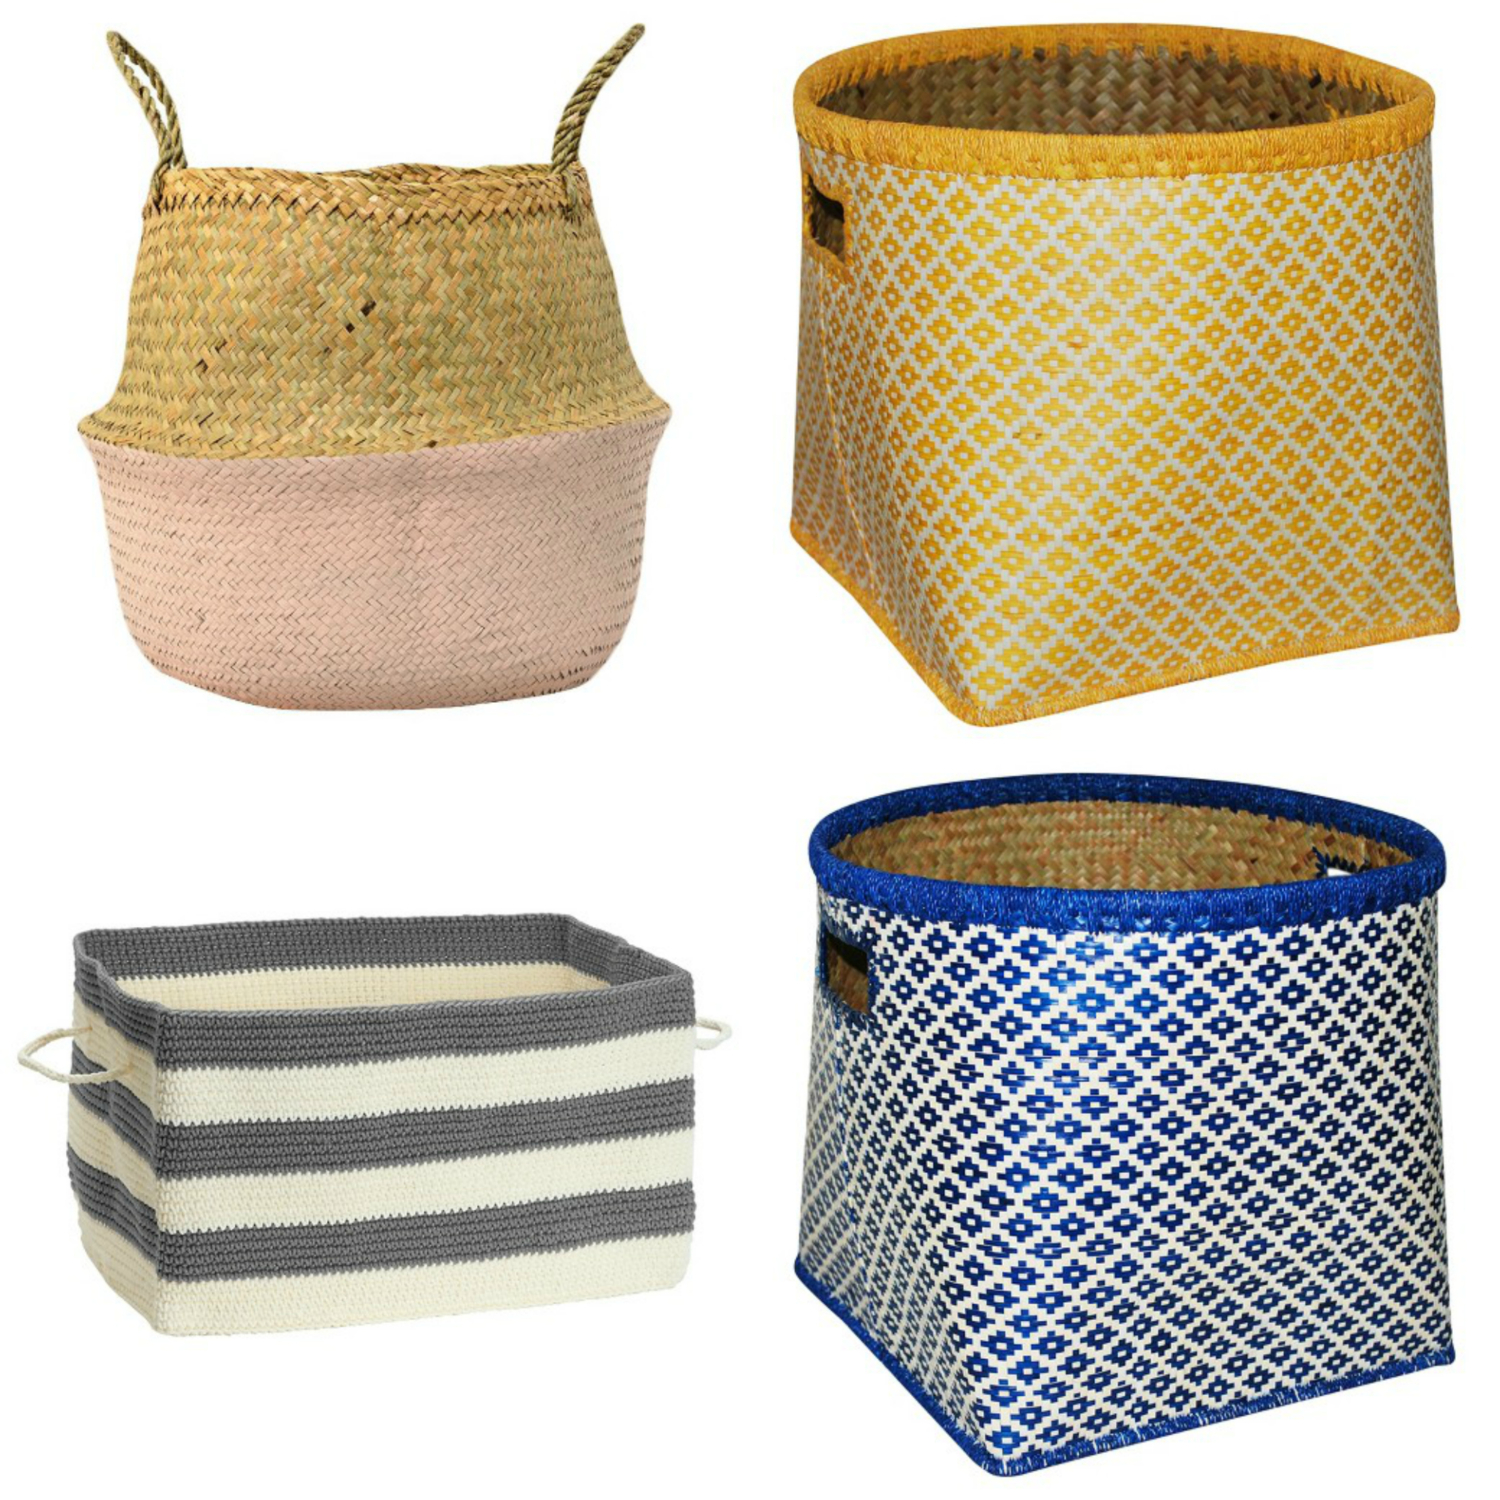 Twenty stylish, affordable mudroom baskets